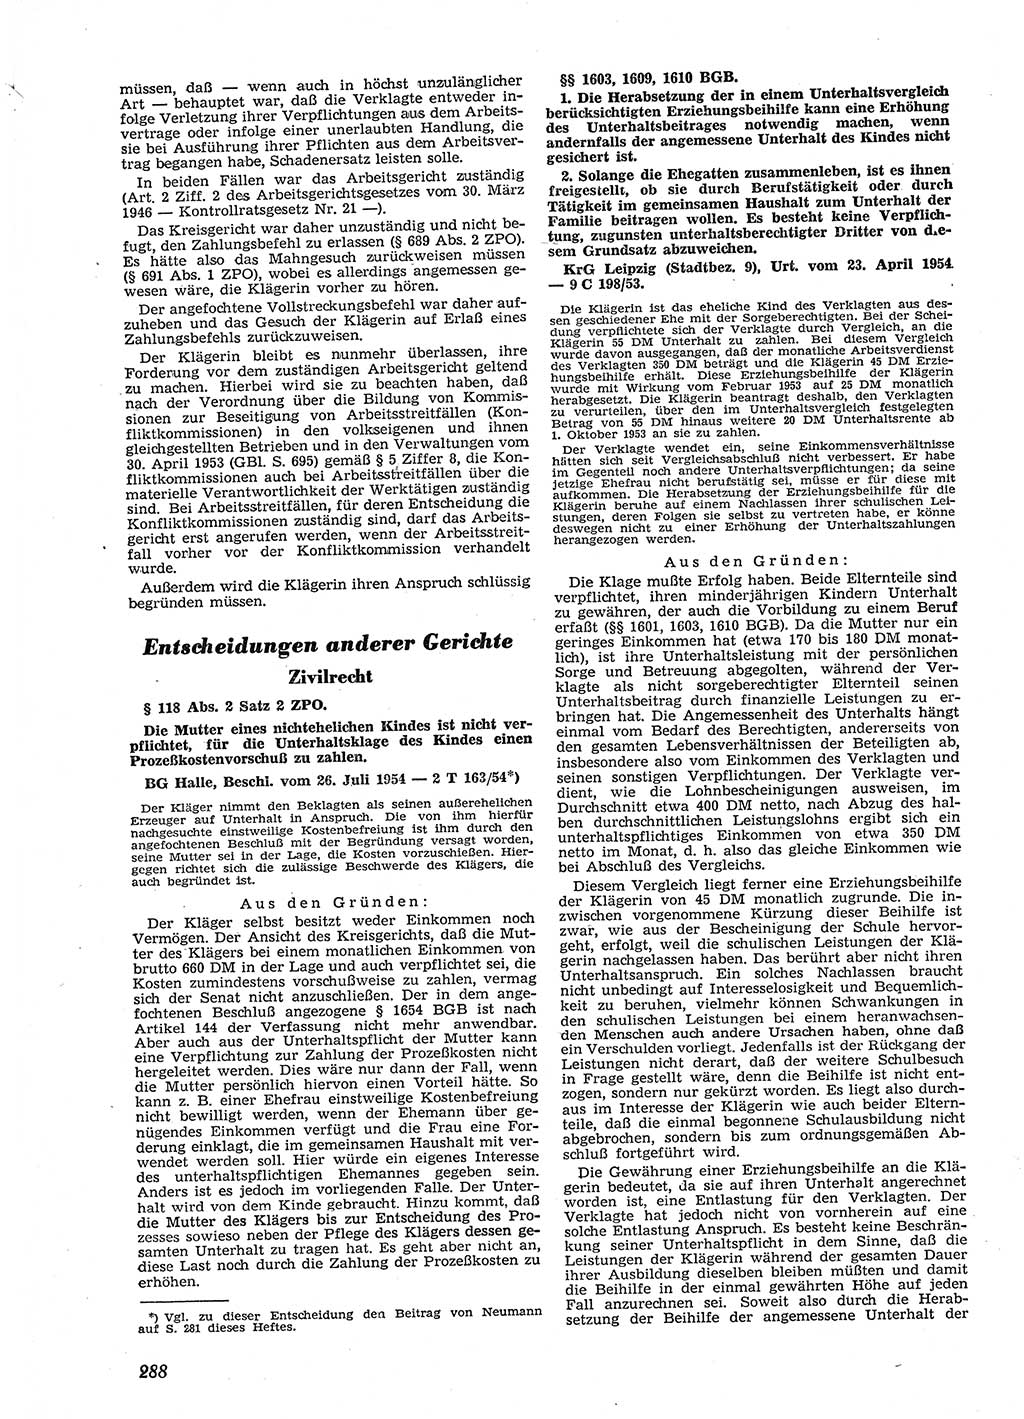 Neue Justiz (NJ), Zeitschrift für Recht und Rechtswissenschaft [Deutsche Demokratische Republik (DDR)], 9. Jahrgang 1955, Seite 288 (NJ DDR 1955, S. 288)